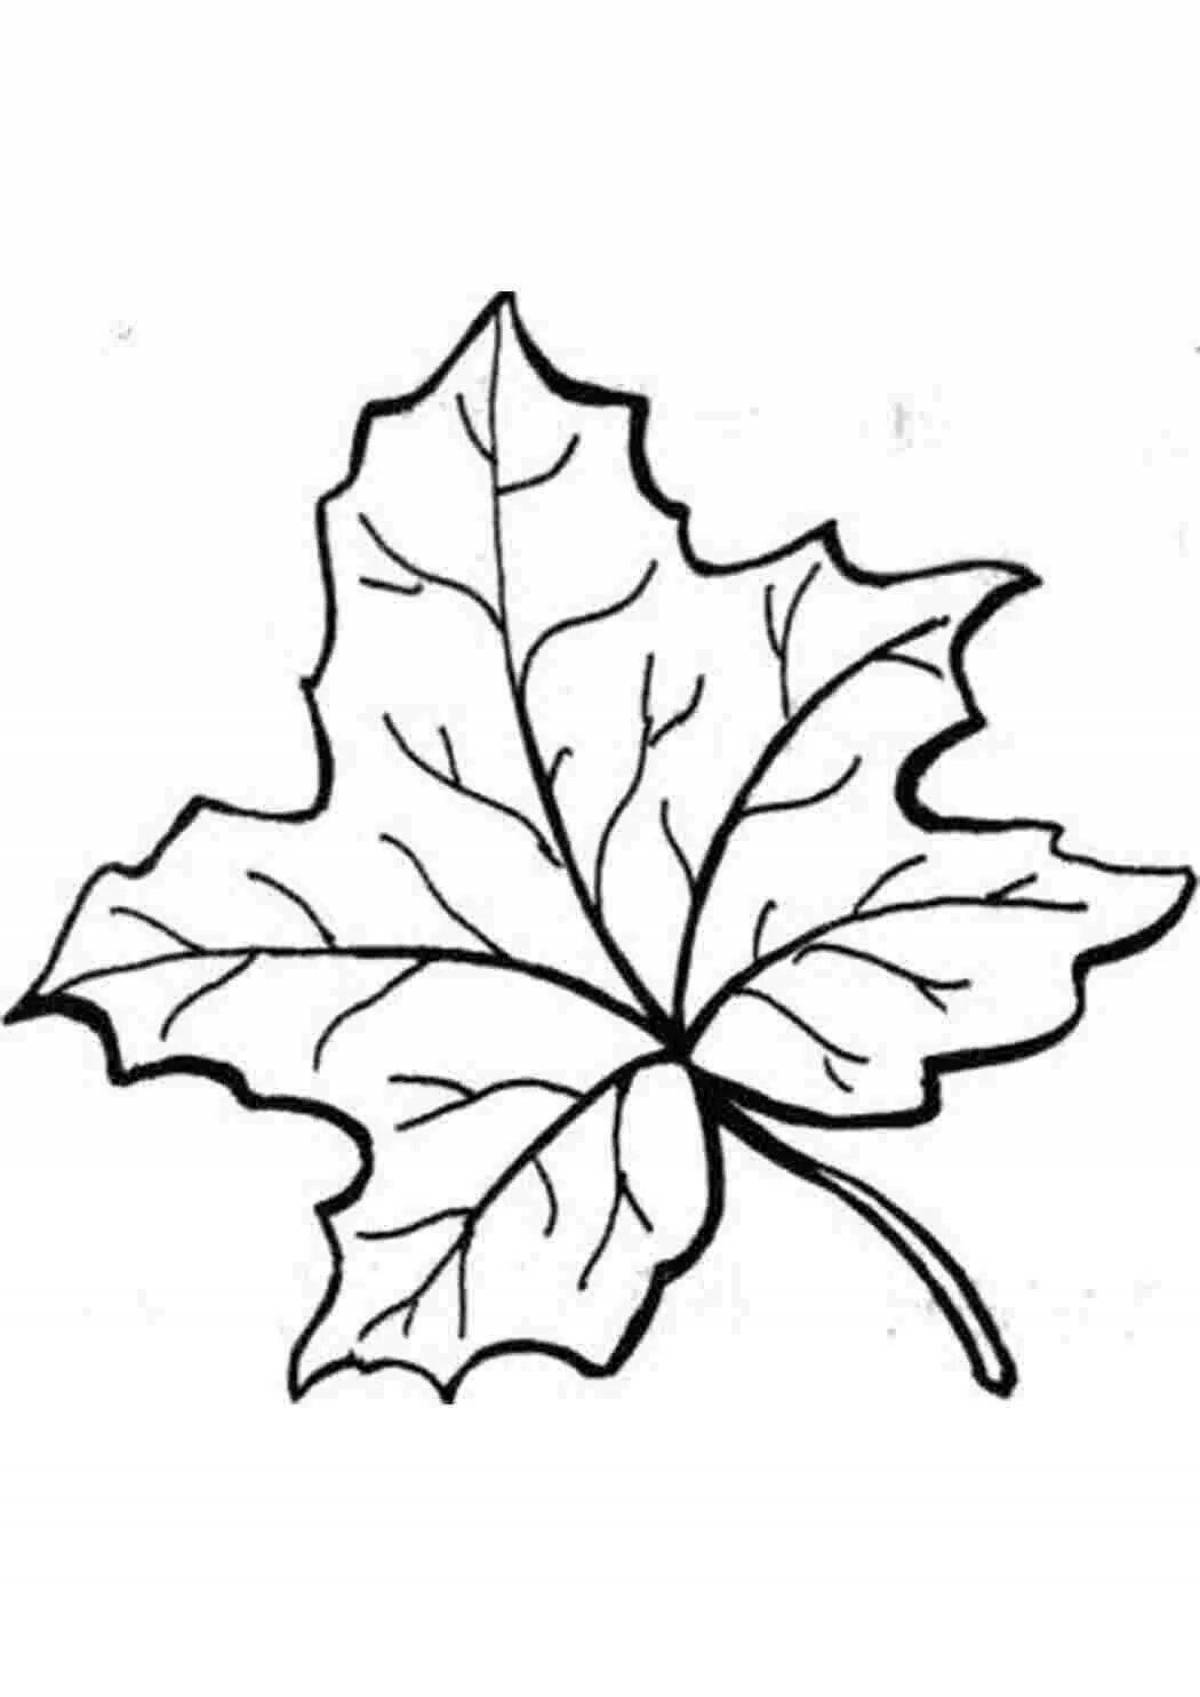 Joyful maple leaf coloring for kids